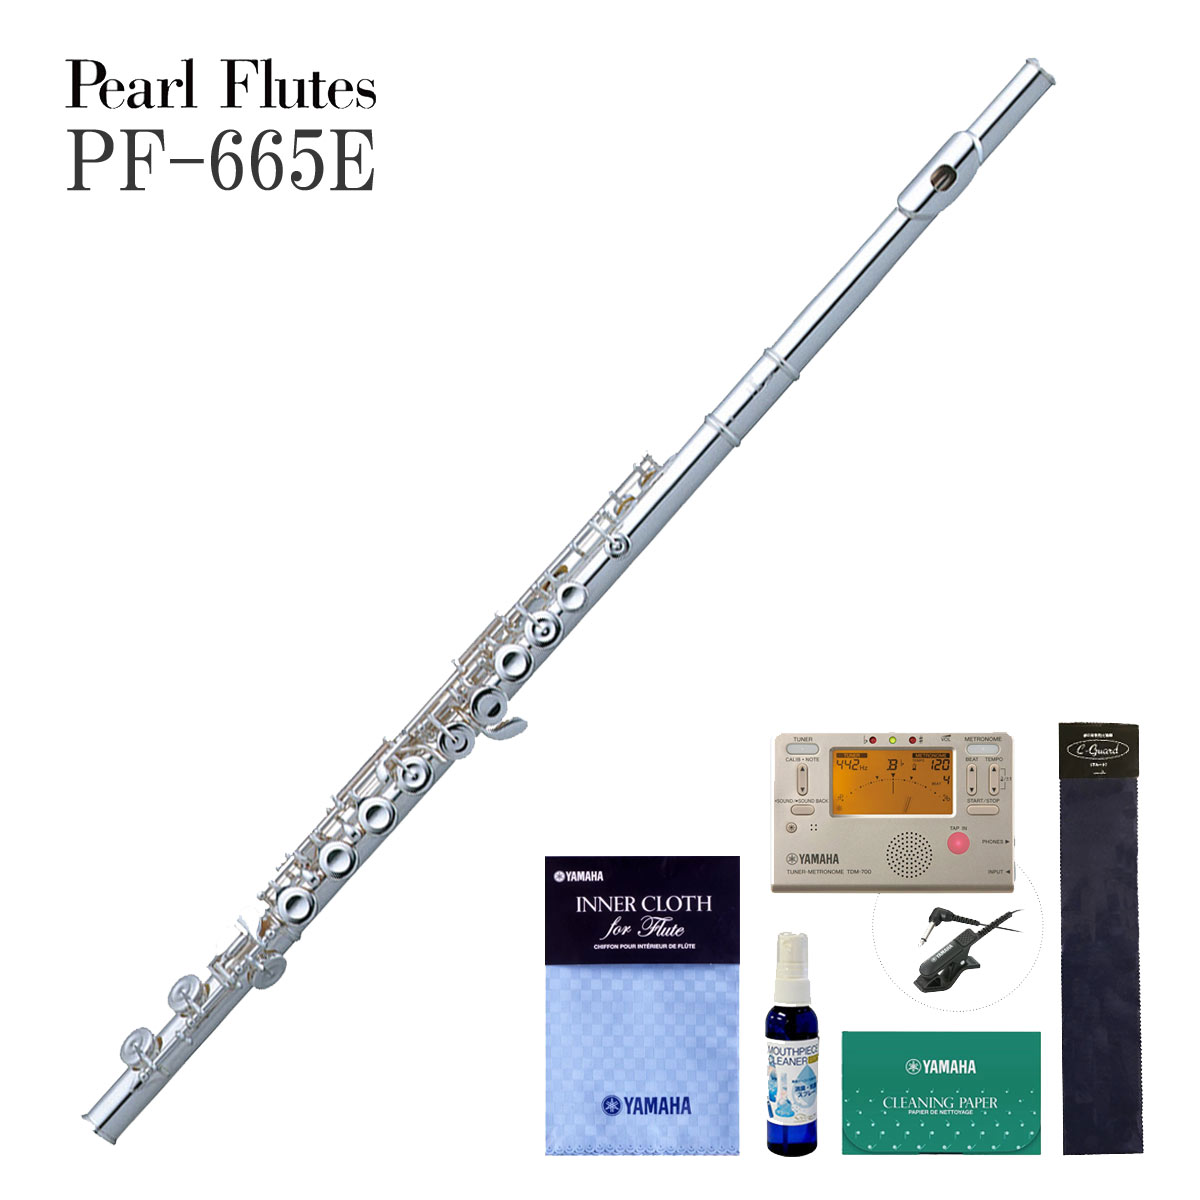 Pearl Flute / PF-665E パール フルート 頭部管銀製 厳選アクセサリー